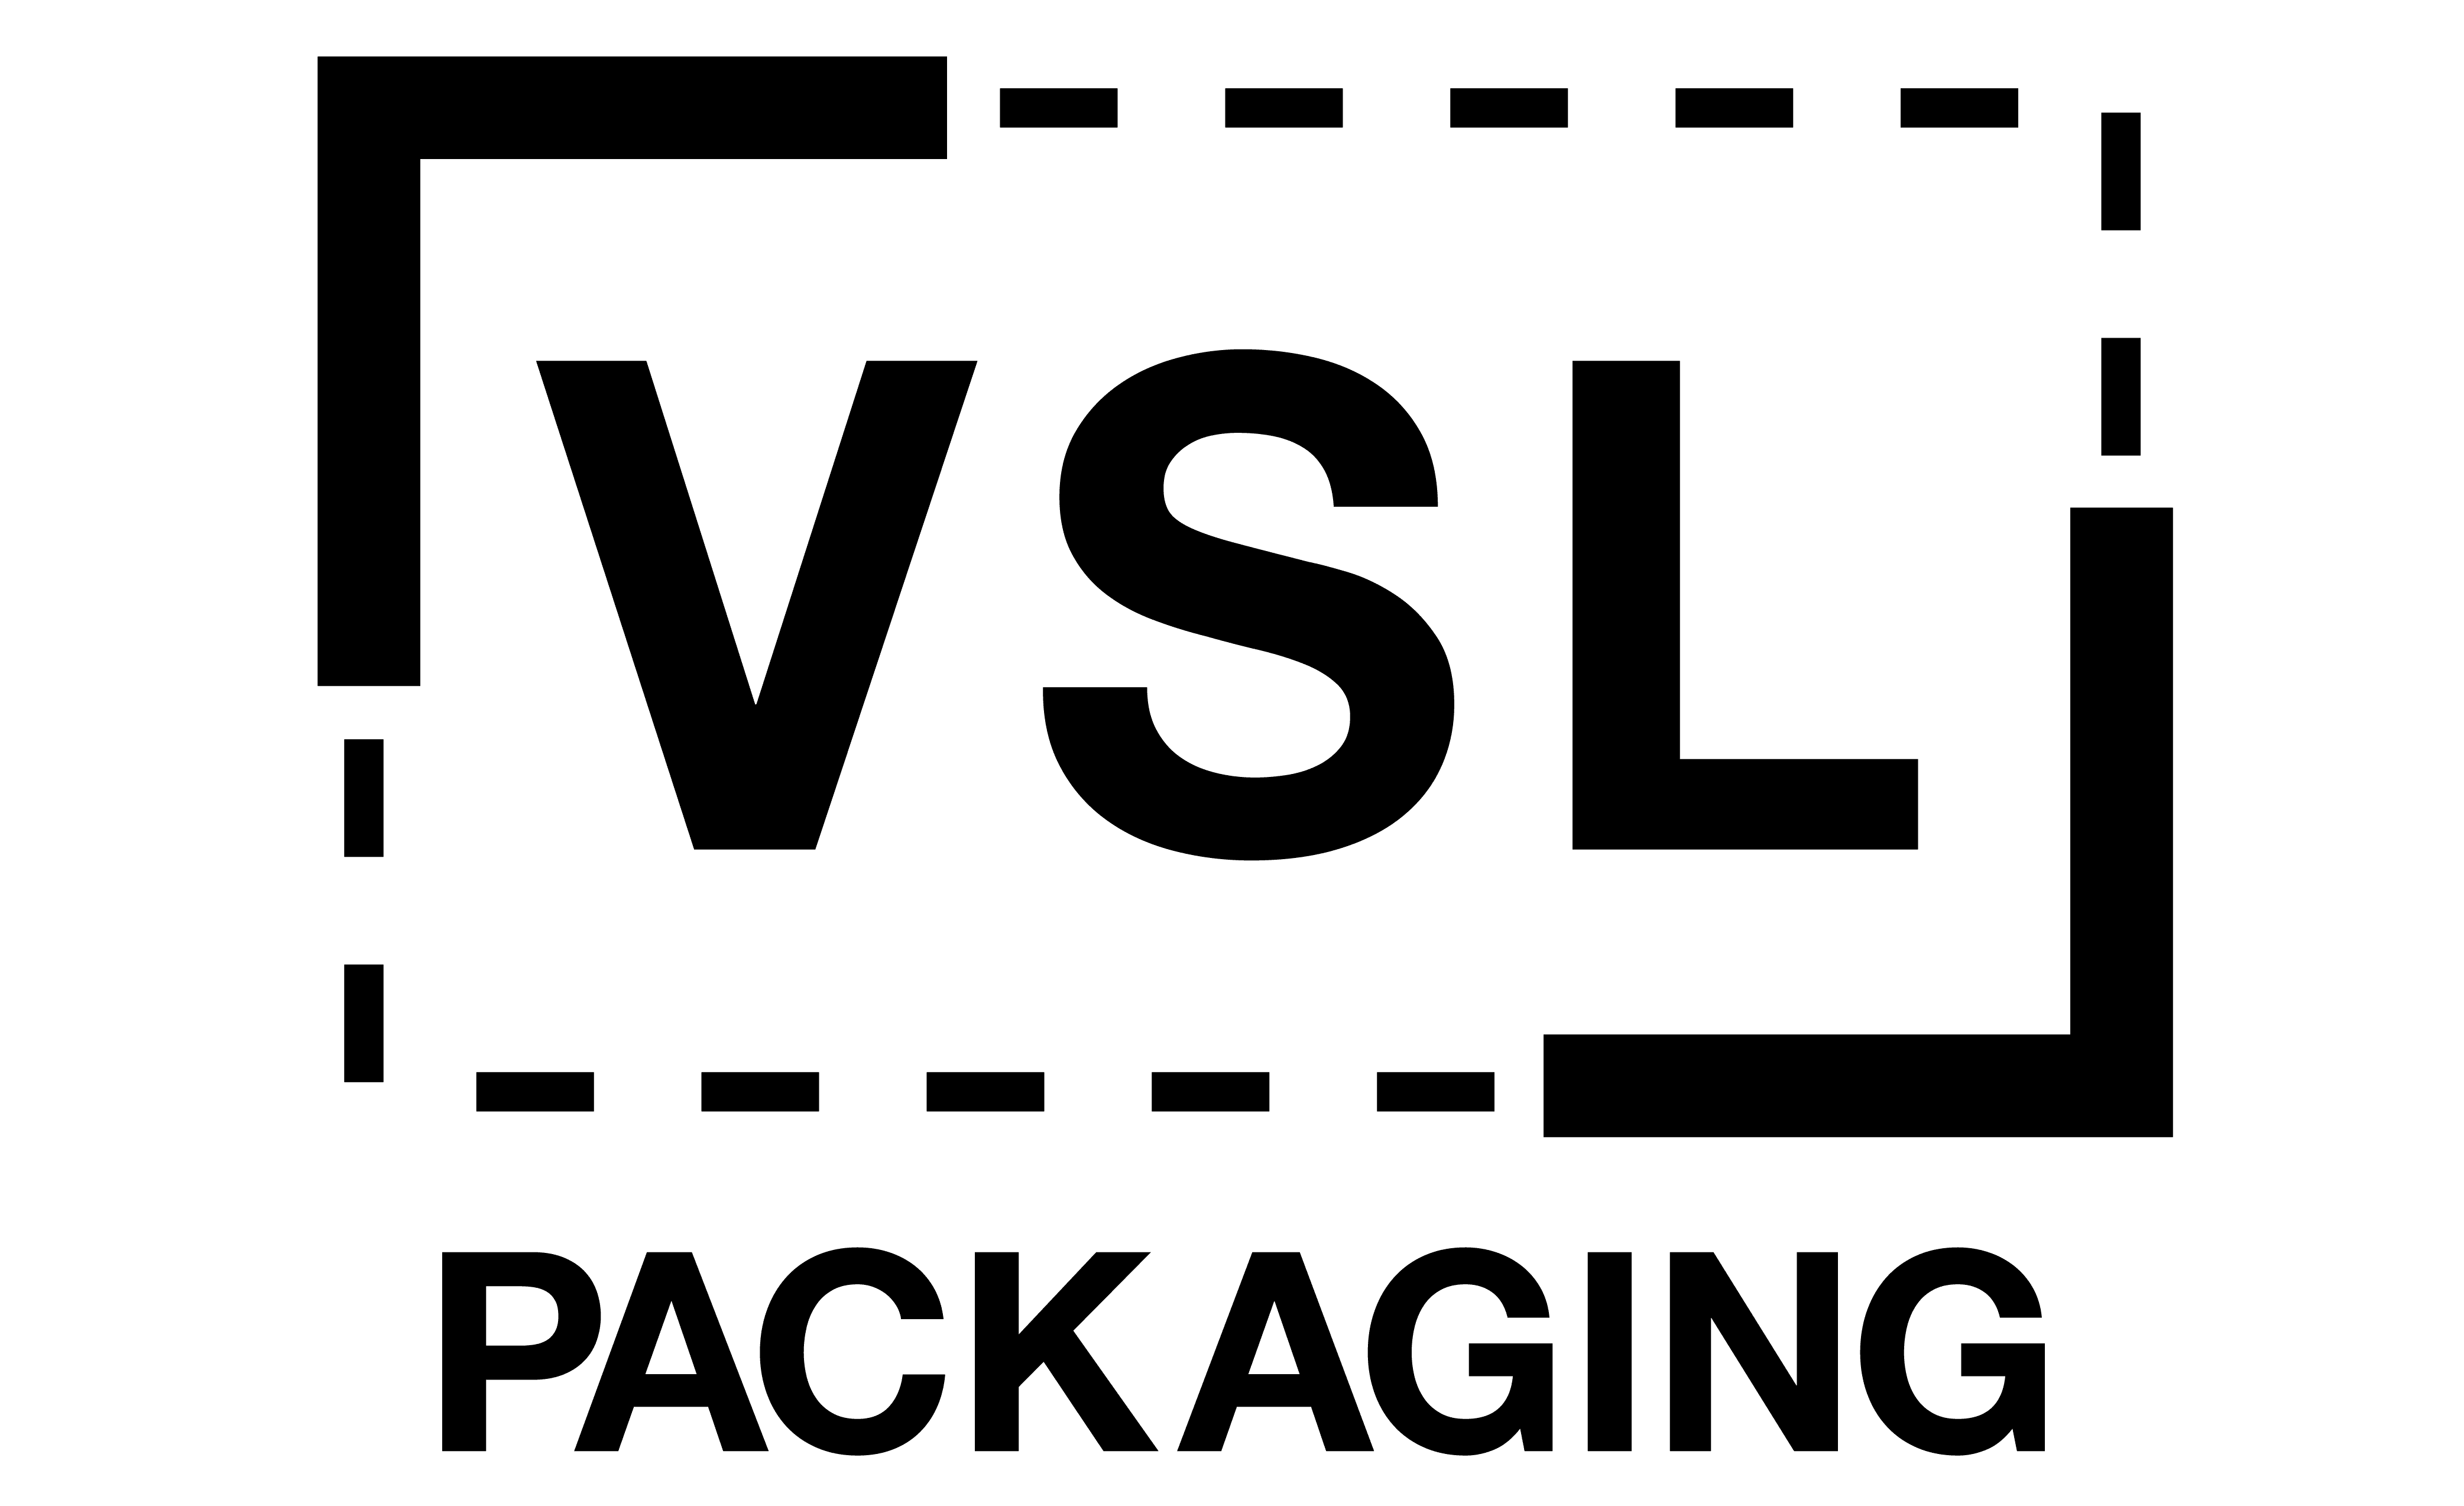 VSL-Packaging-logo-transparent